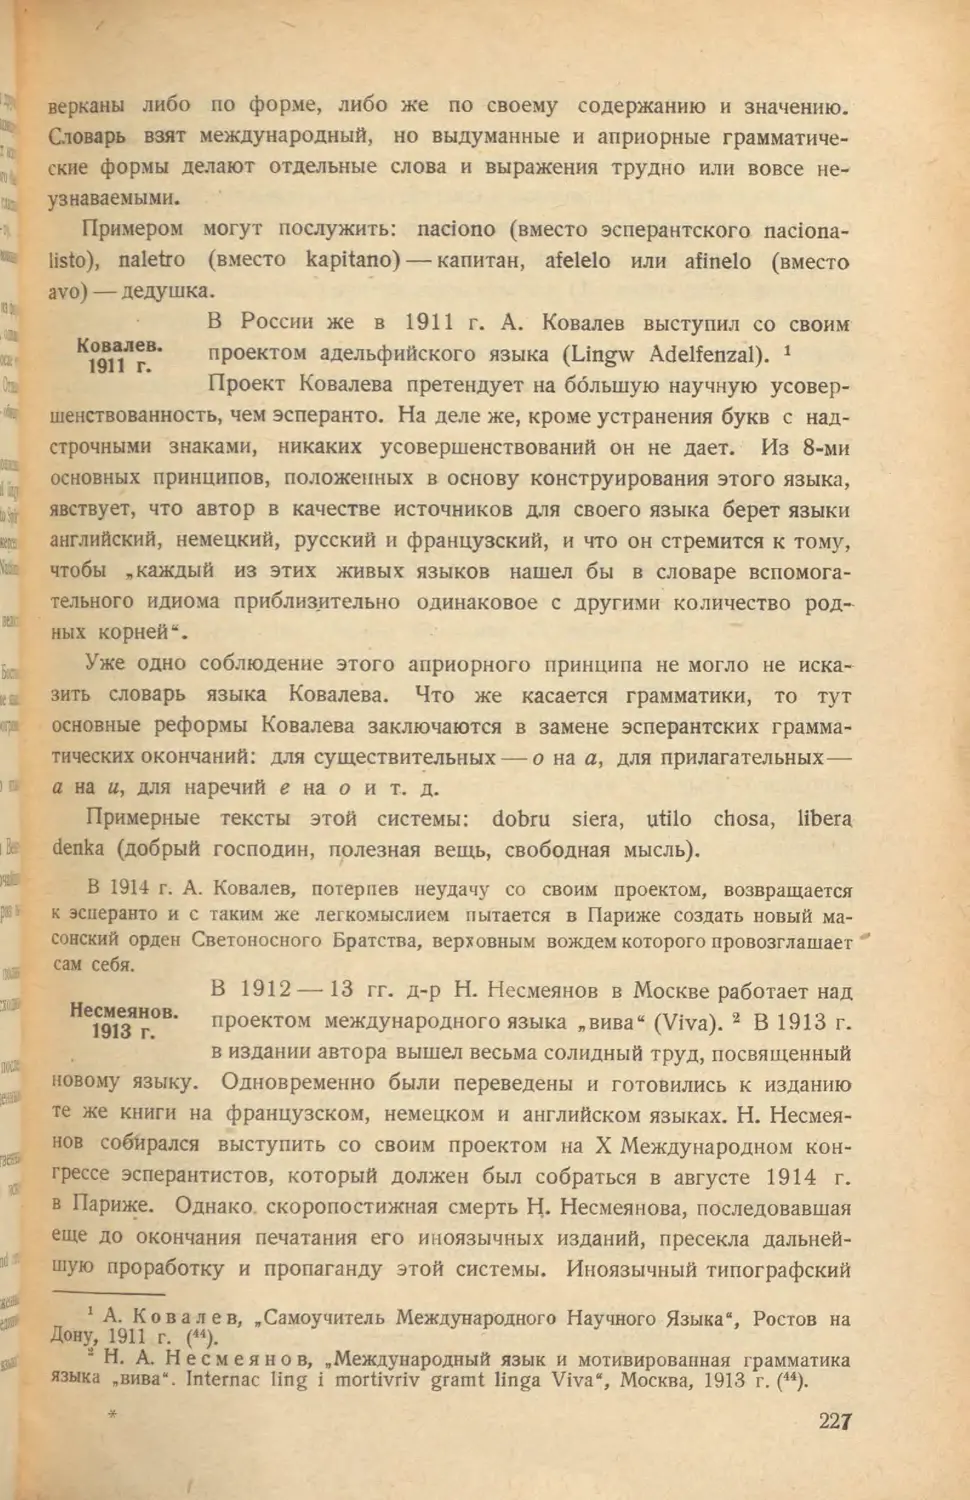 Ковалев. 1911
Несмеянов. 1913